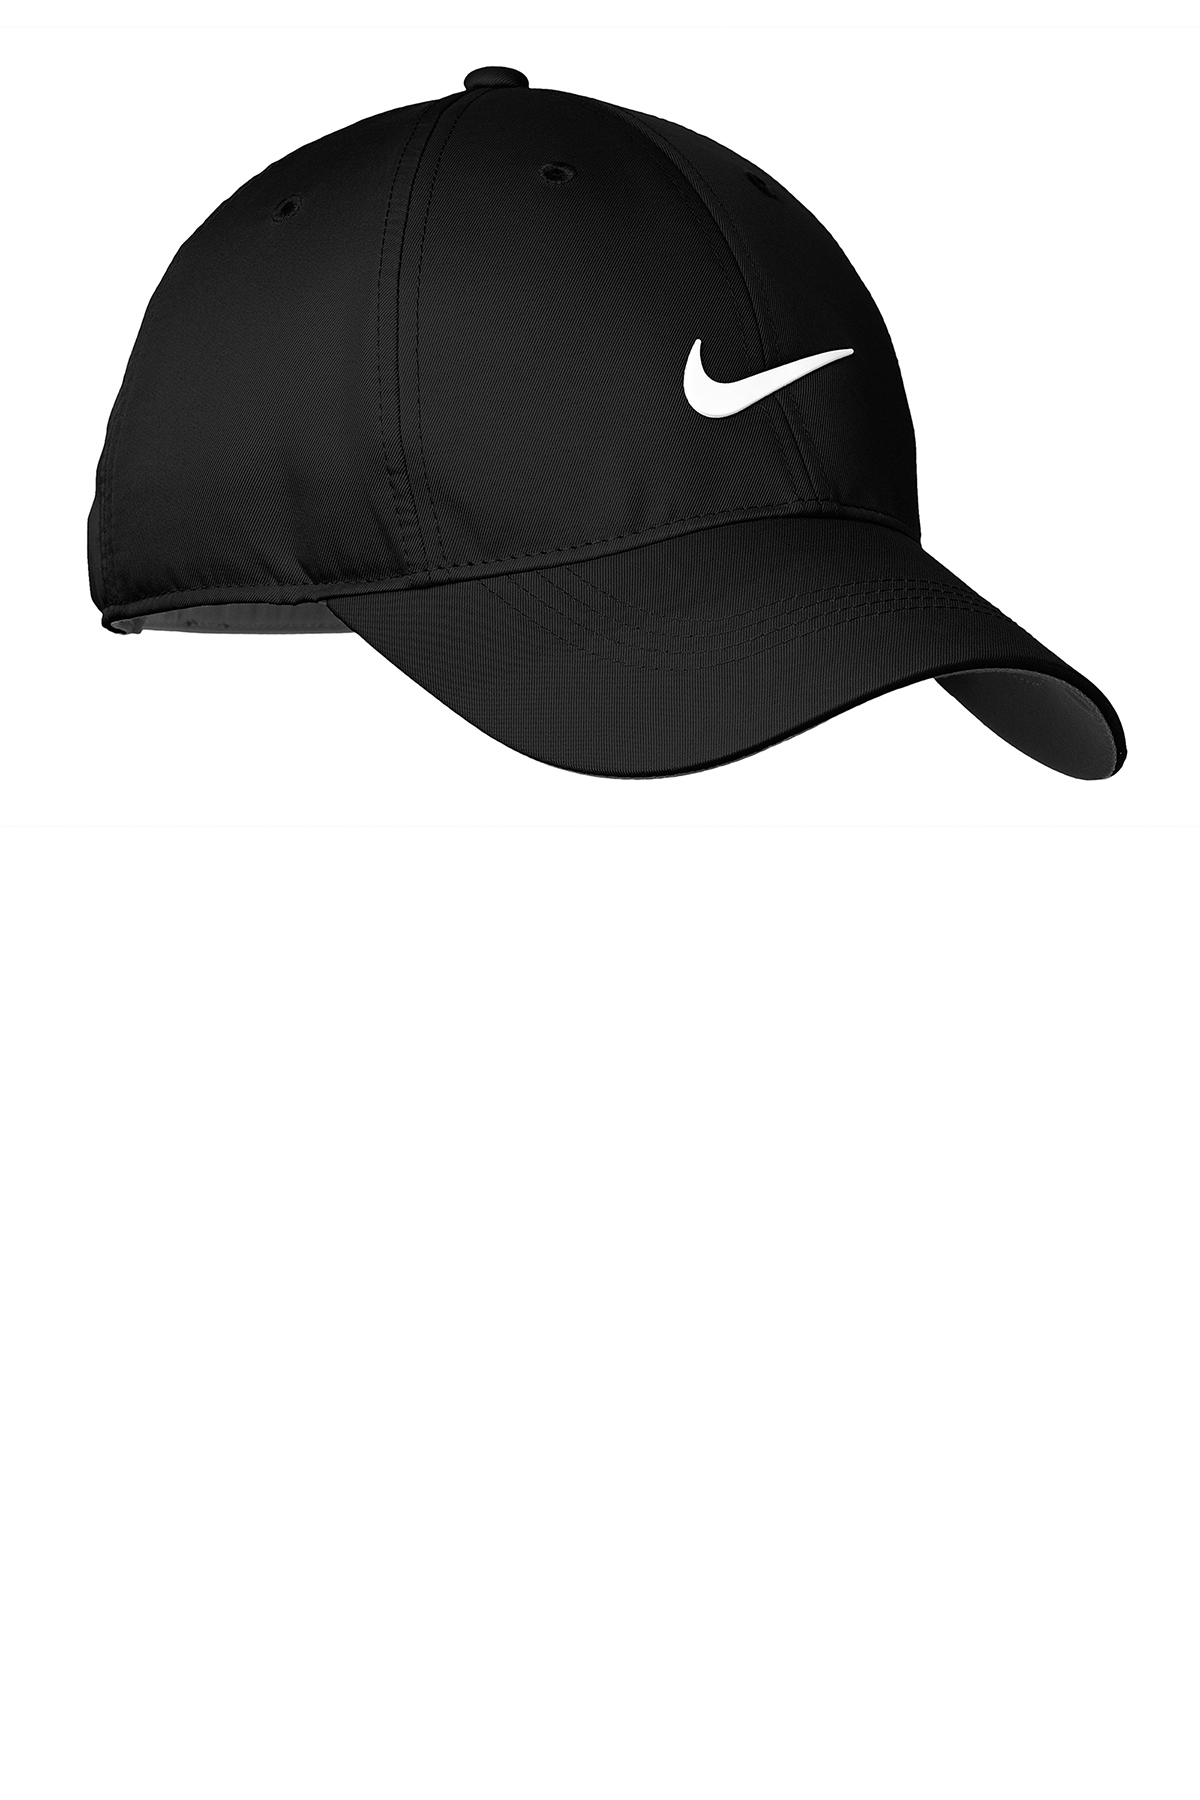 Nike Dri-FIT Swoosh Front Cap | Casuals